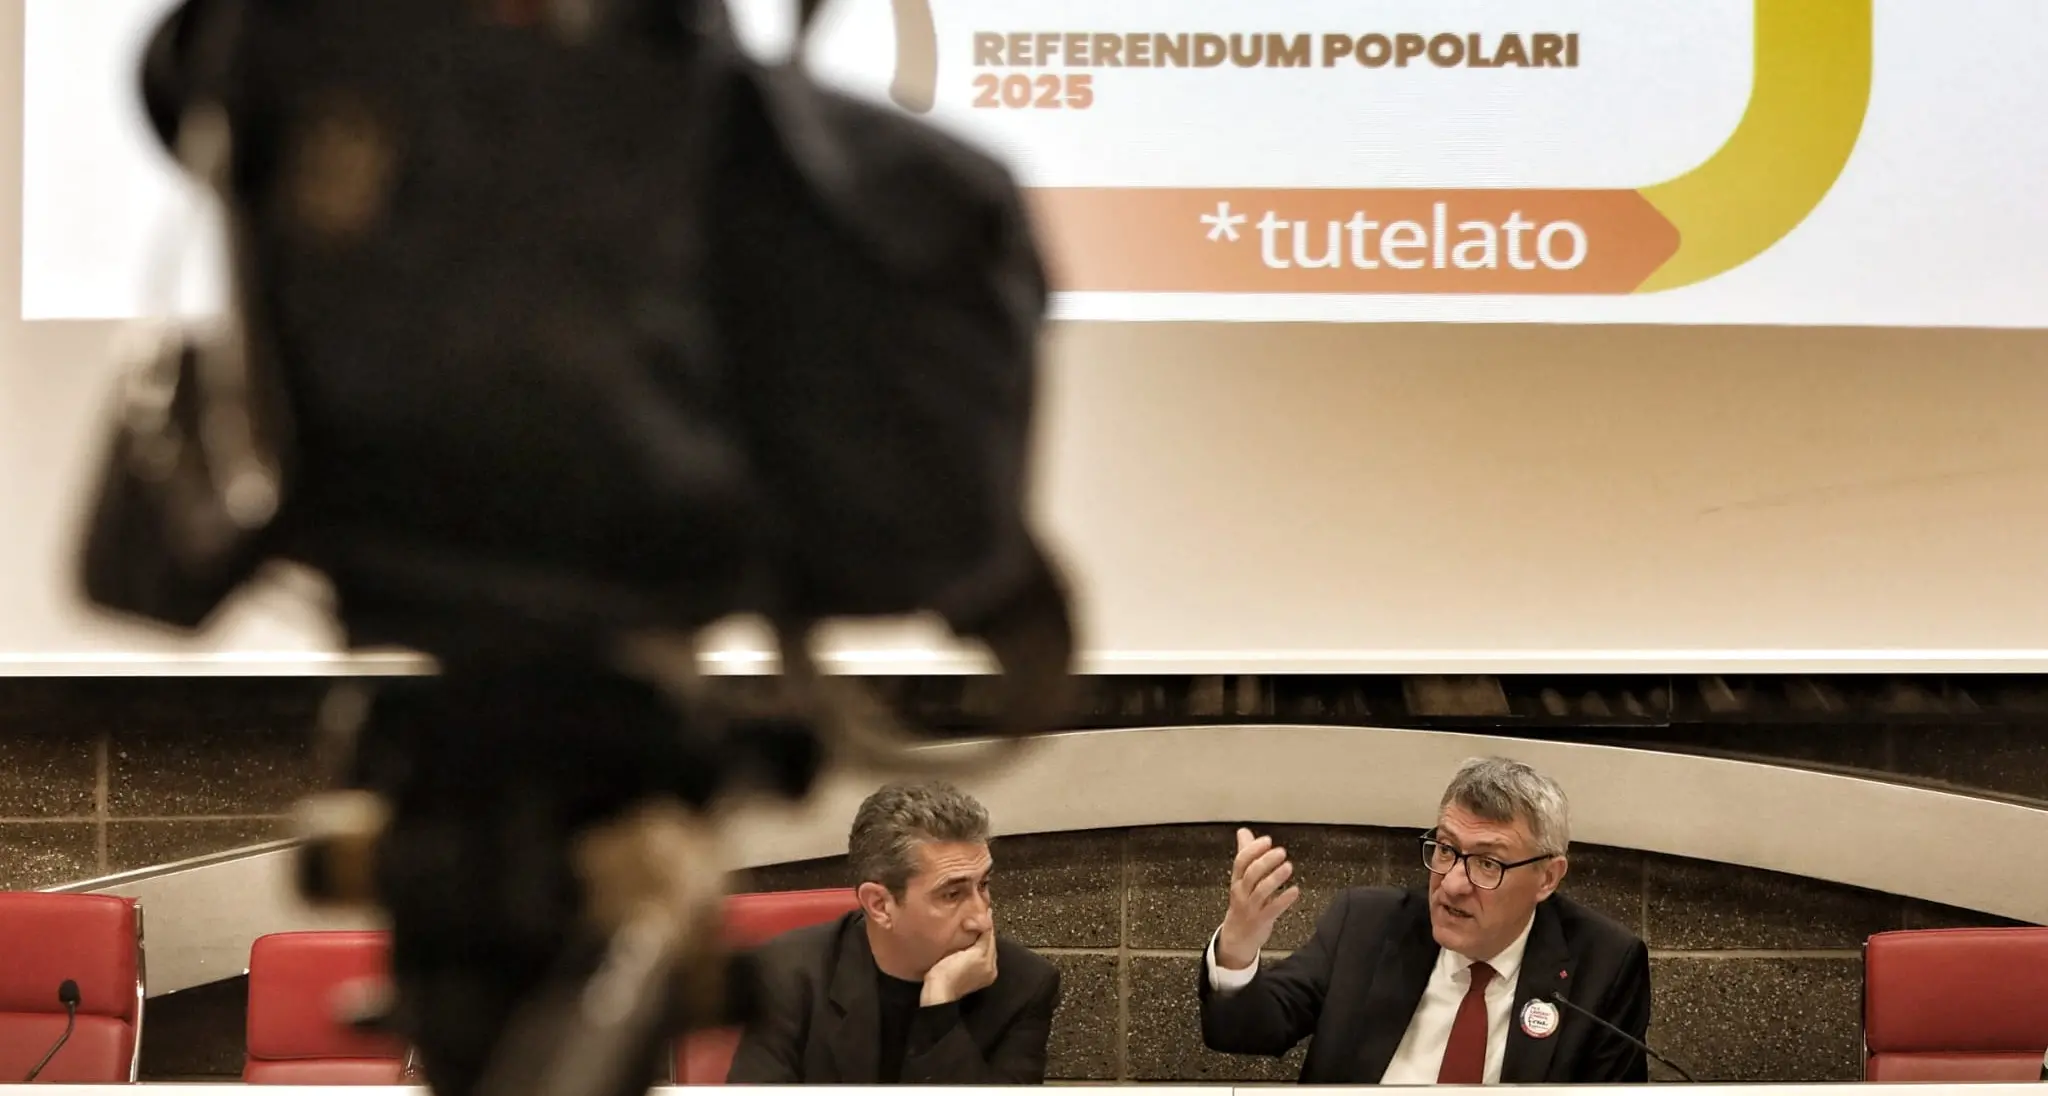 Conferenza stampa con Landini e Giove su tesseramento, referendum e mobilitazione - Video